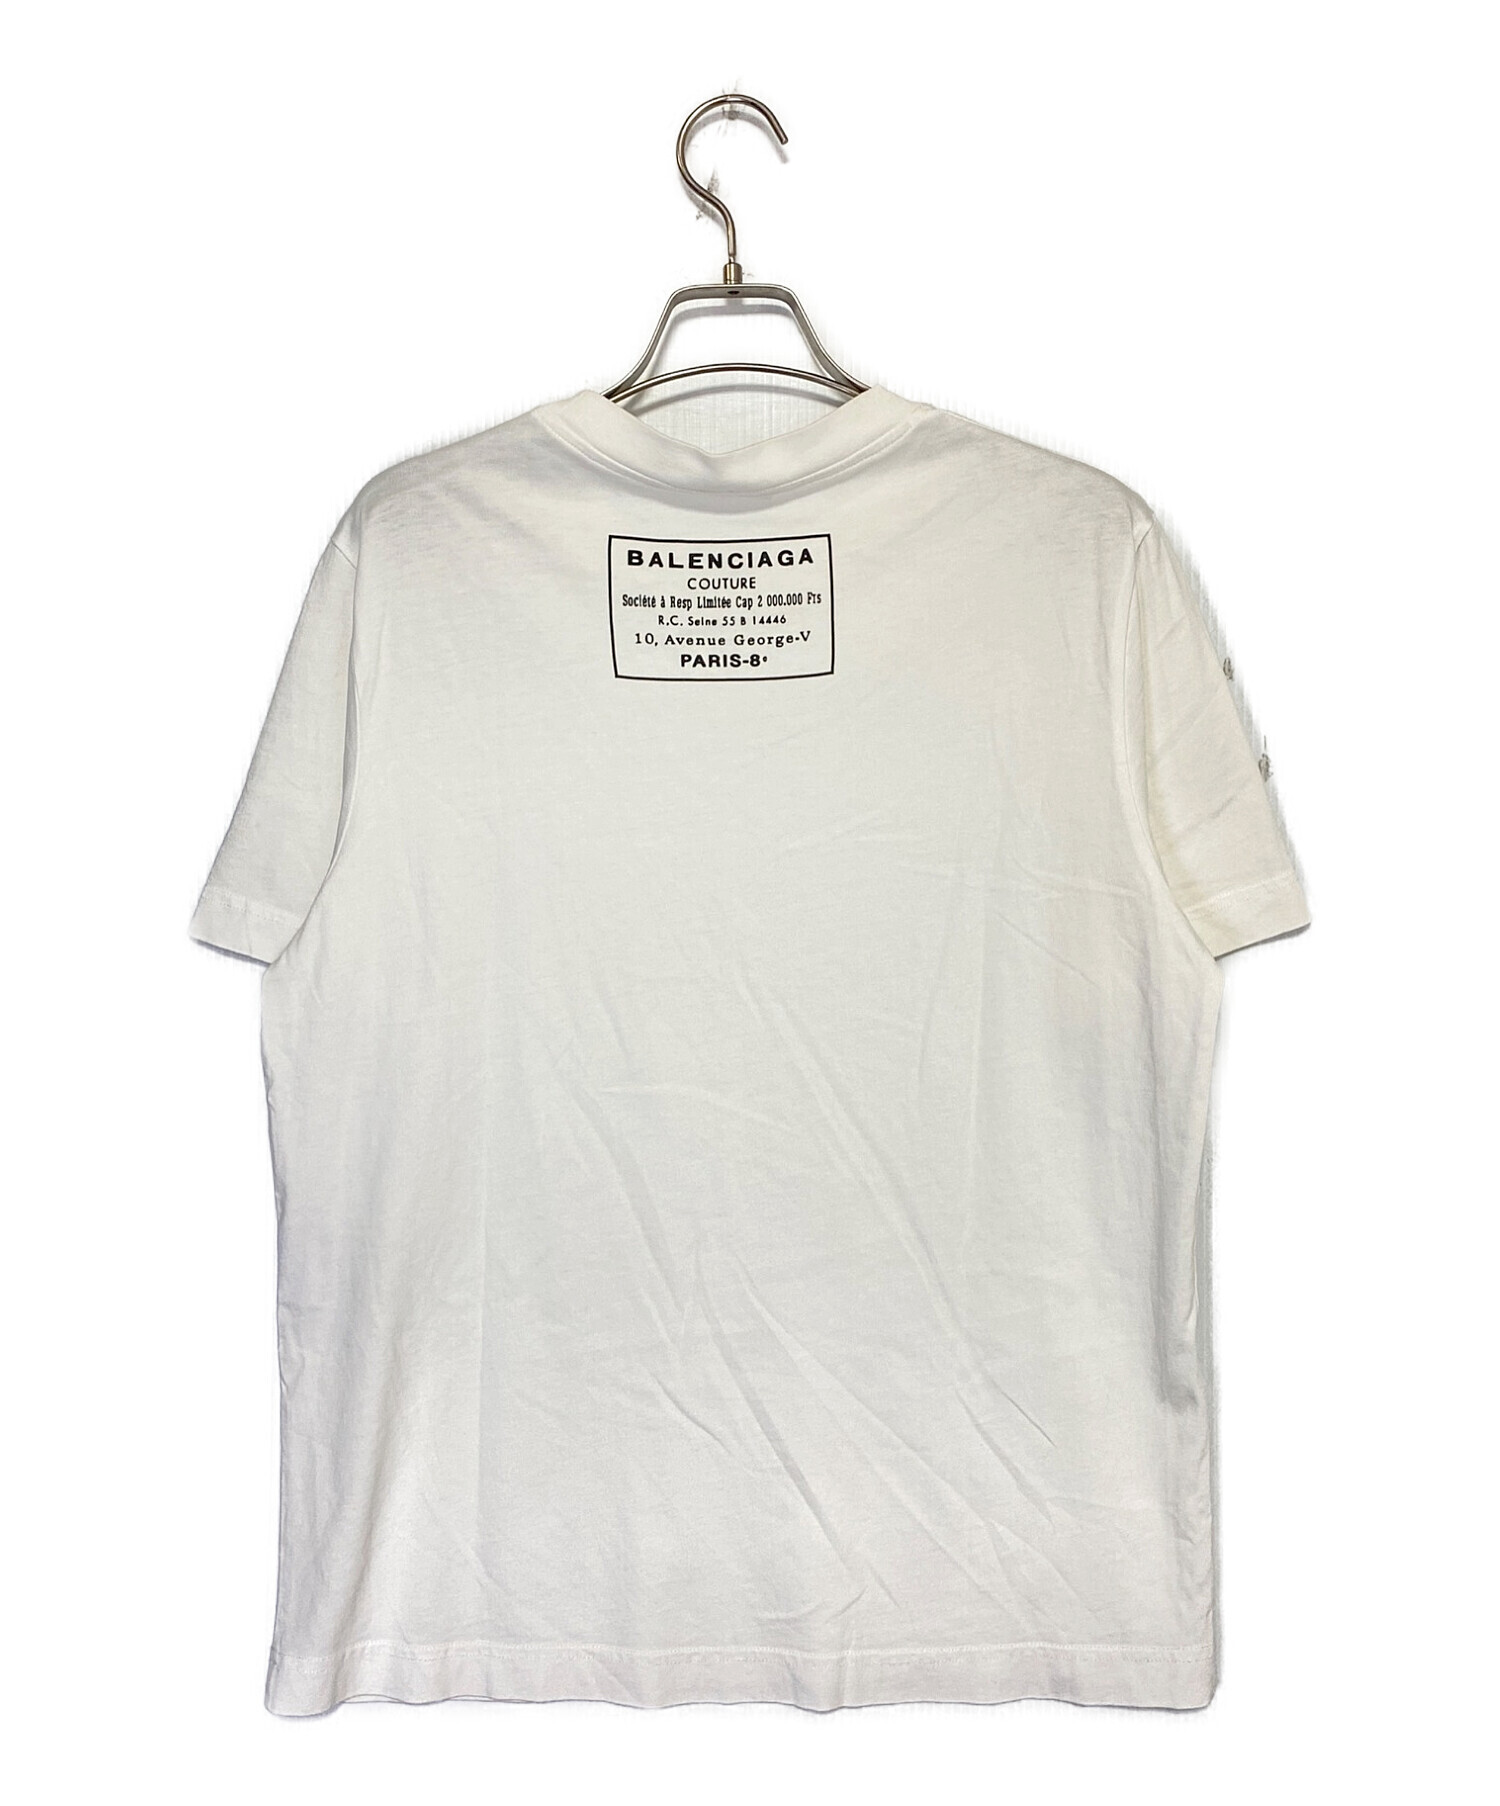 BALENCIAGA (バレンシアガ) バックロゴTシャツ ホワイト サイズ:S